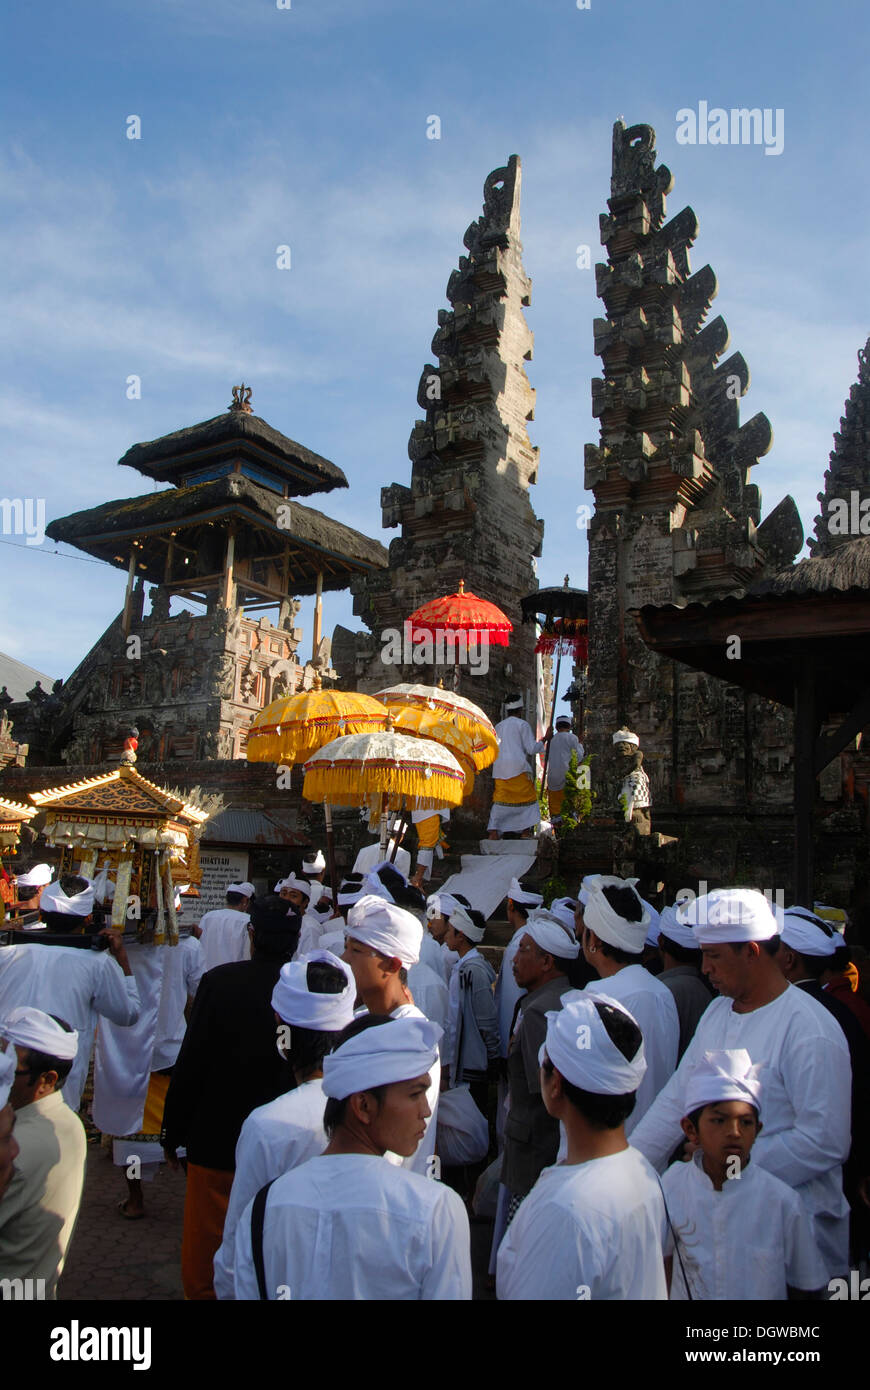 Balinesischen Hinduismus, Versammlung von Gläubigen, die Zeremonie, die Gläubigen in weißen Tempel-Kleid mit bunten Sonnenschirmen, Tor aufgeteilt Stockfoto